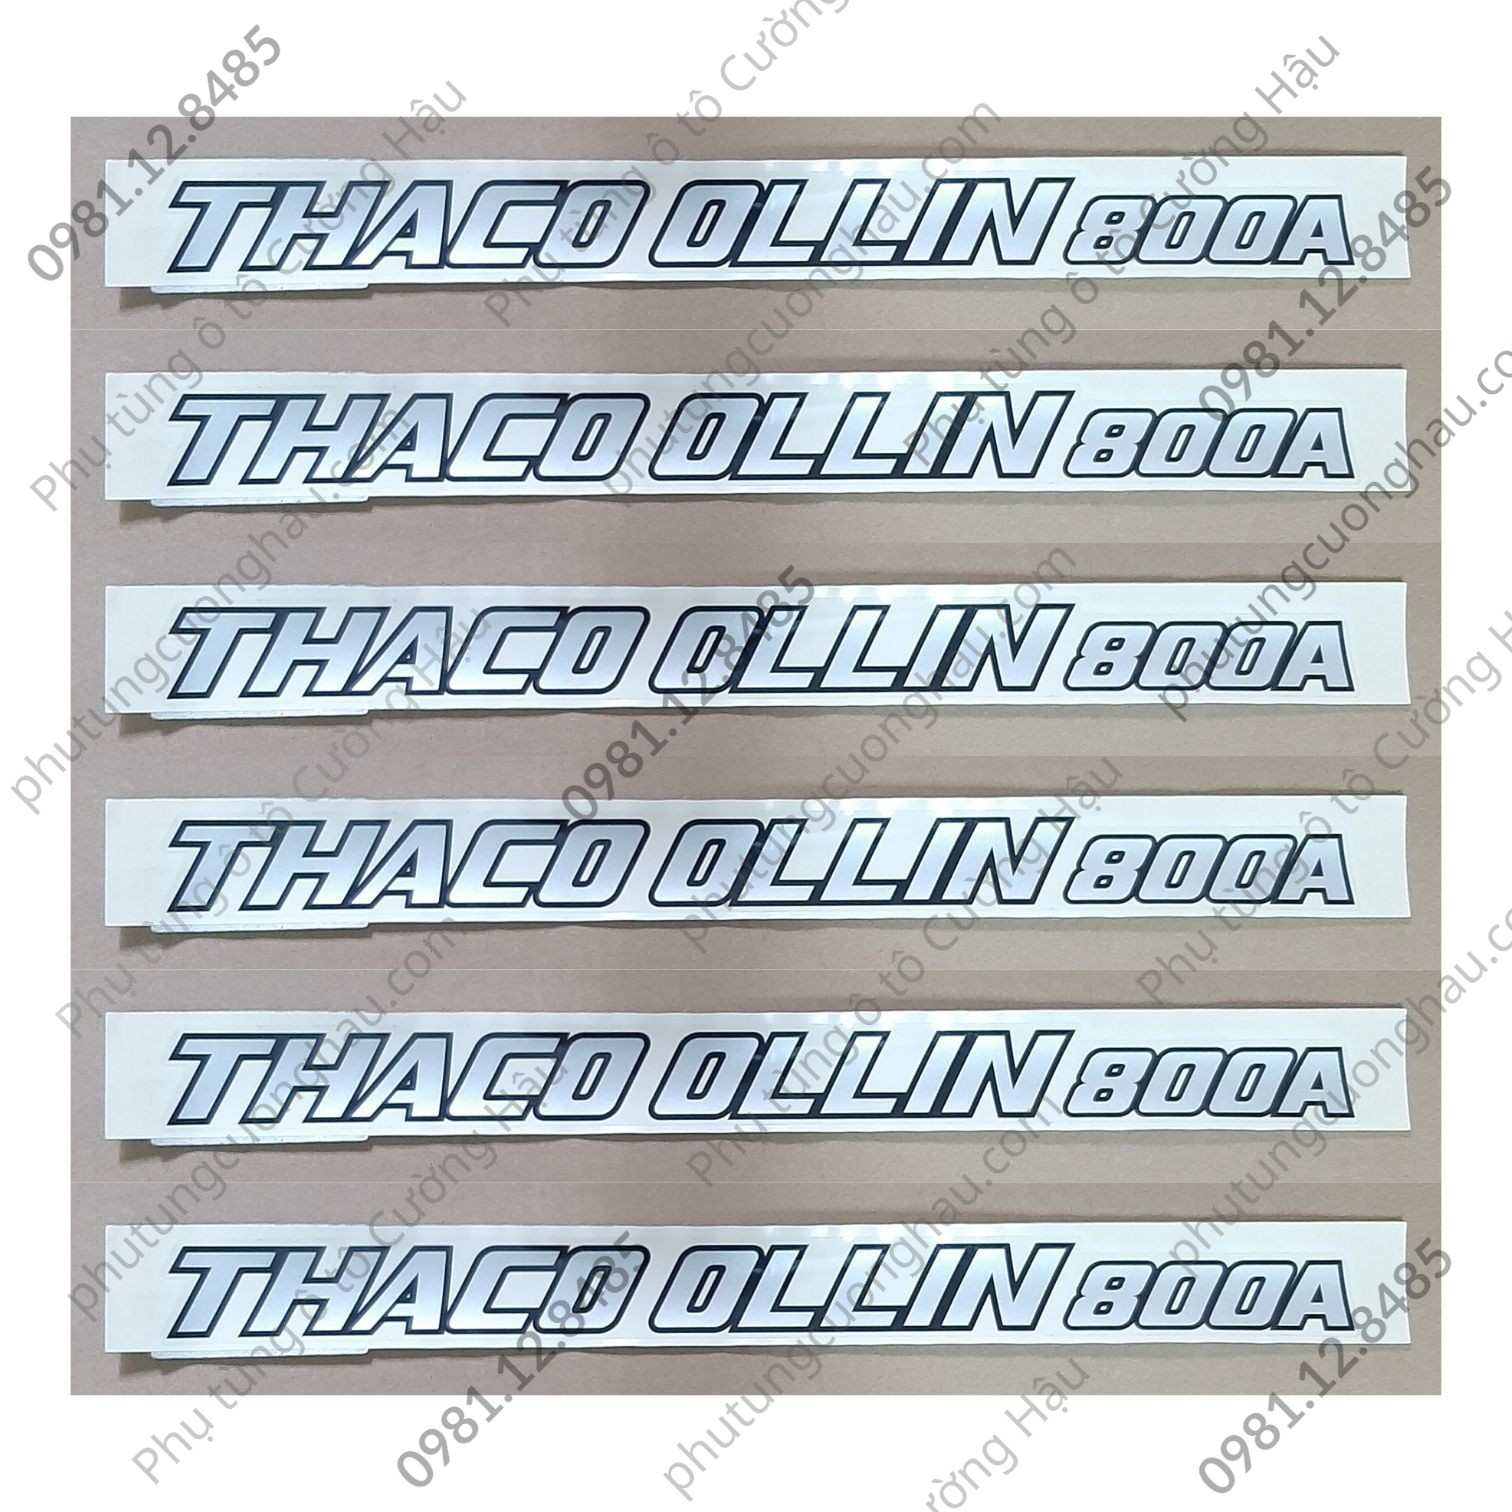 Thumbnail Tem chữ THACO OLLIN 800A, xe tải Thaco Ollin 800A